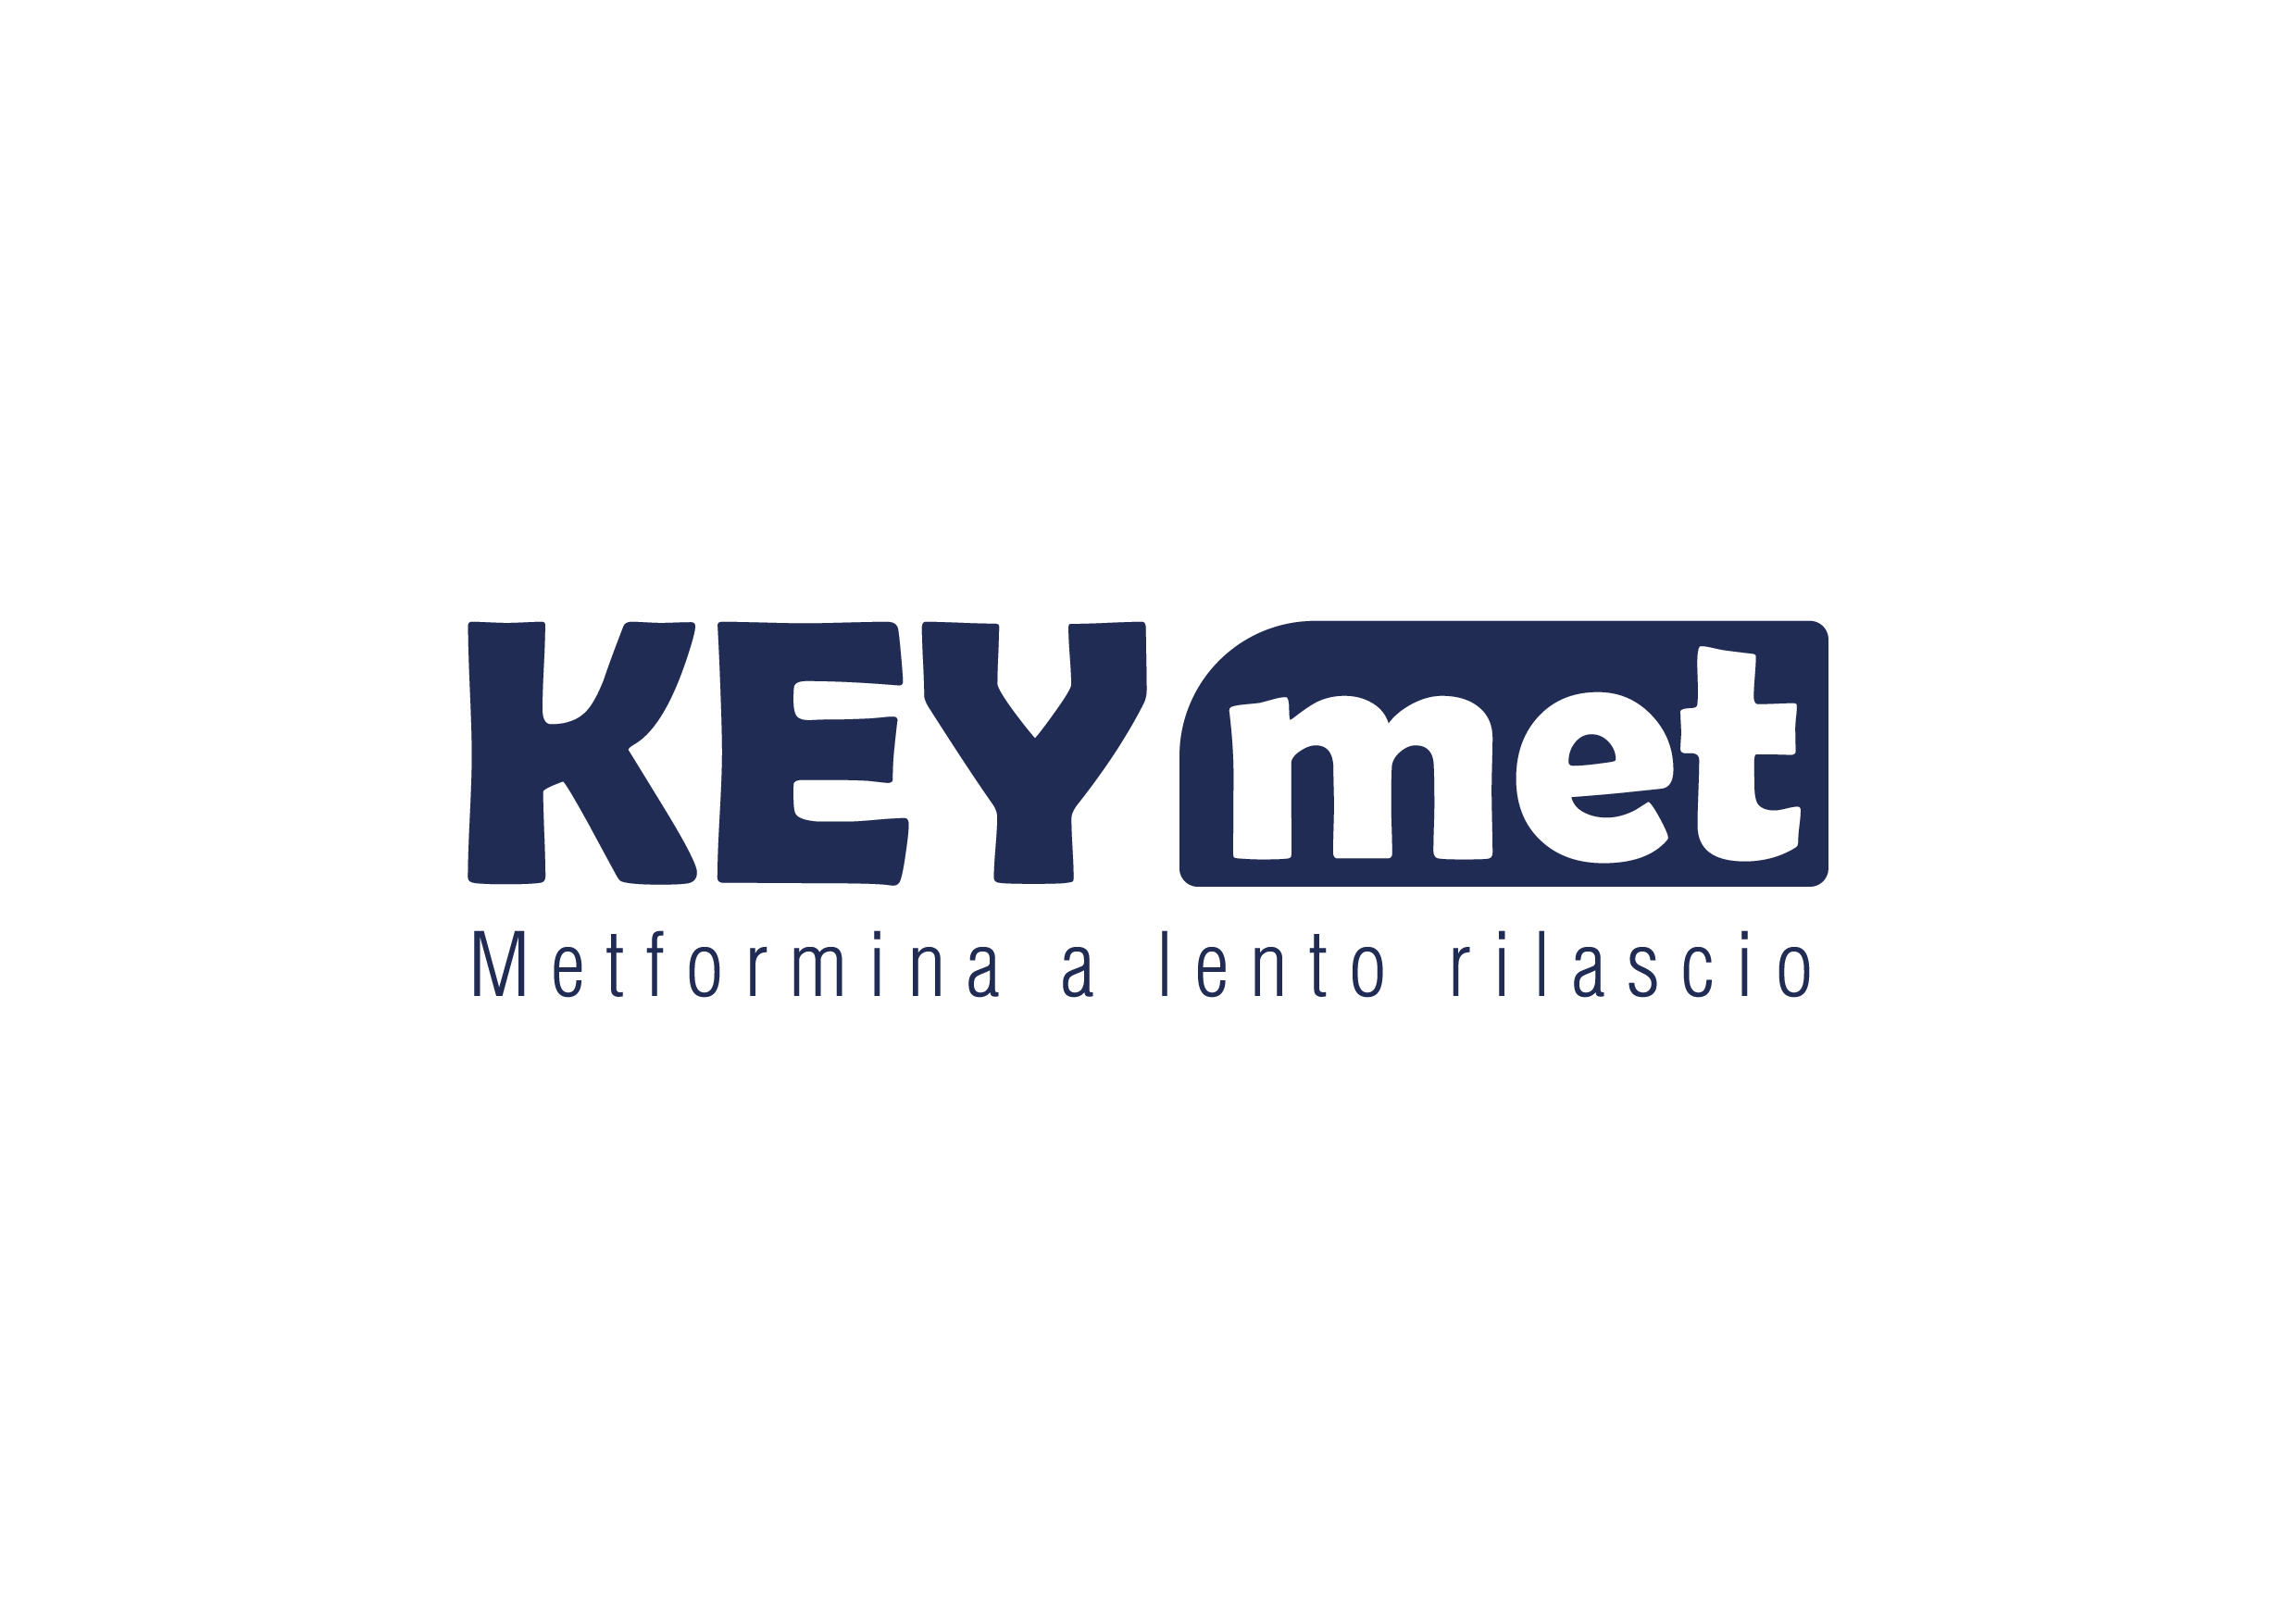 Keymet